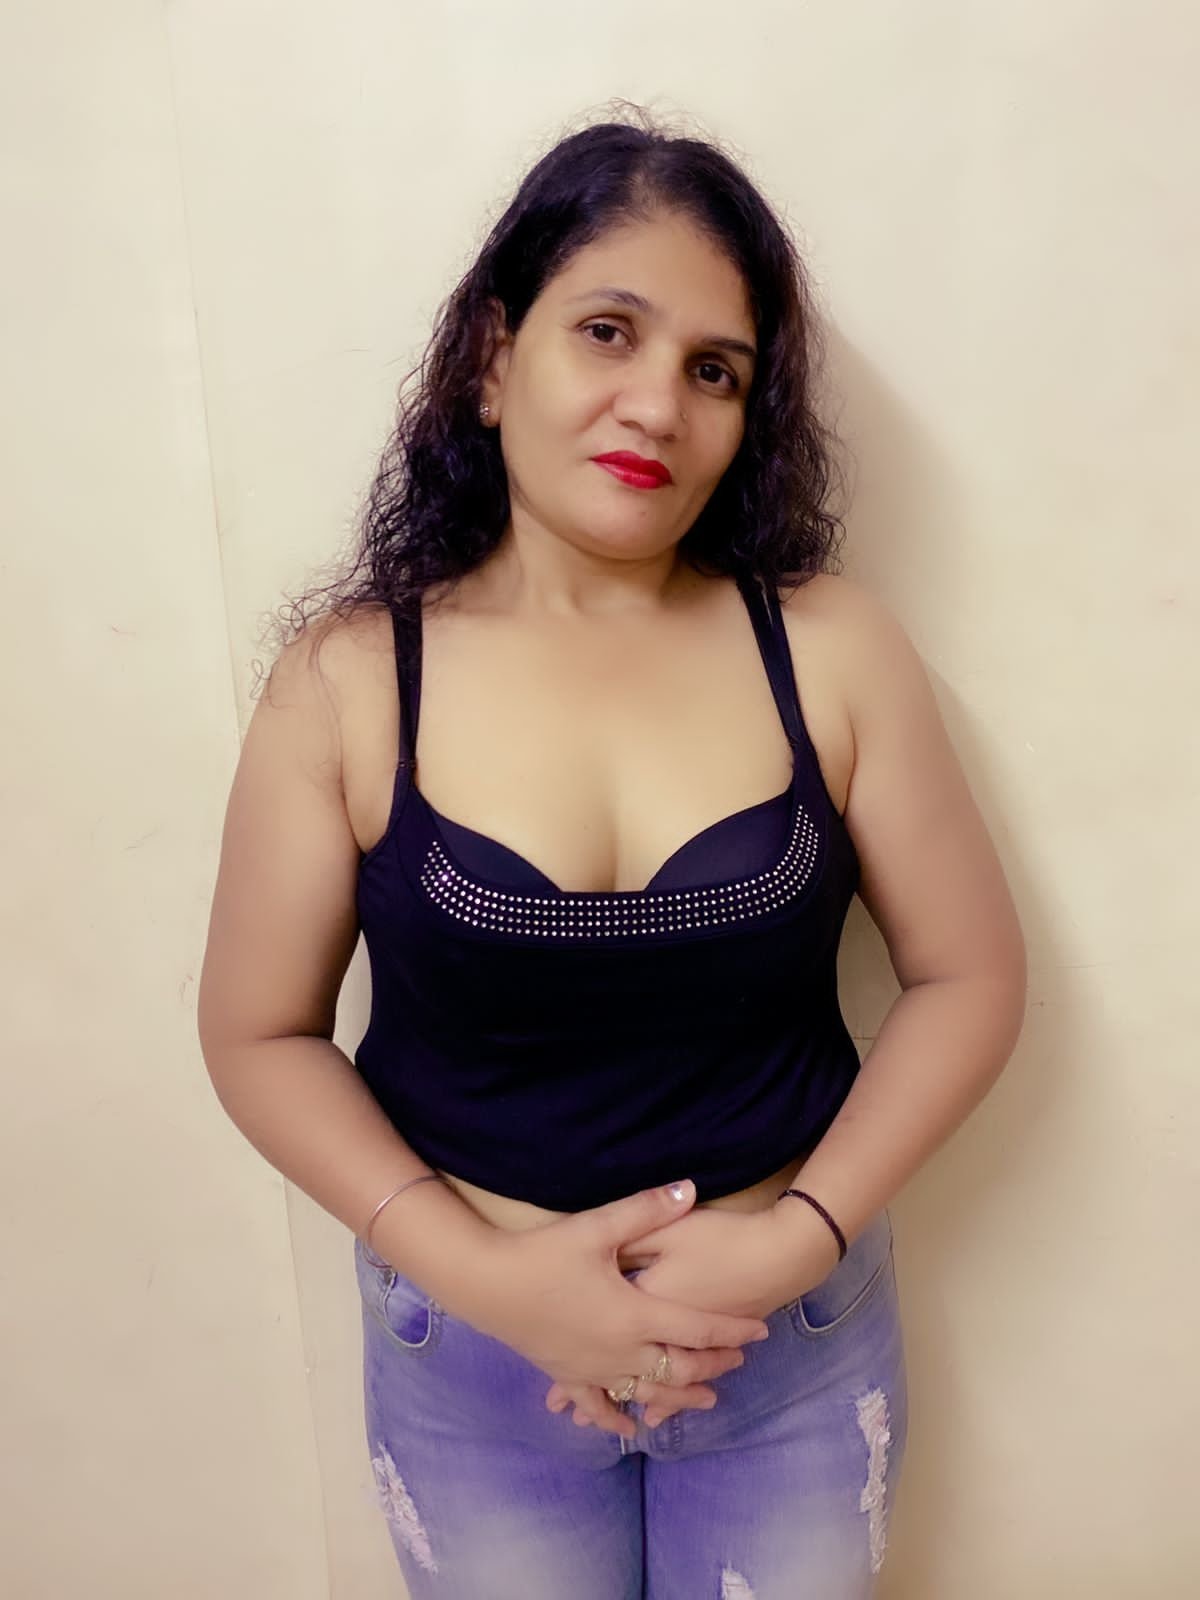 contact escort housewife in mumbai no